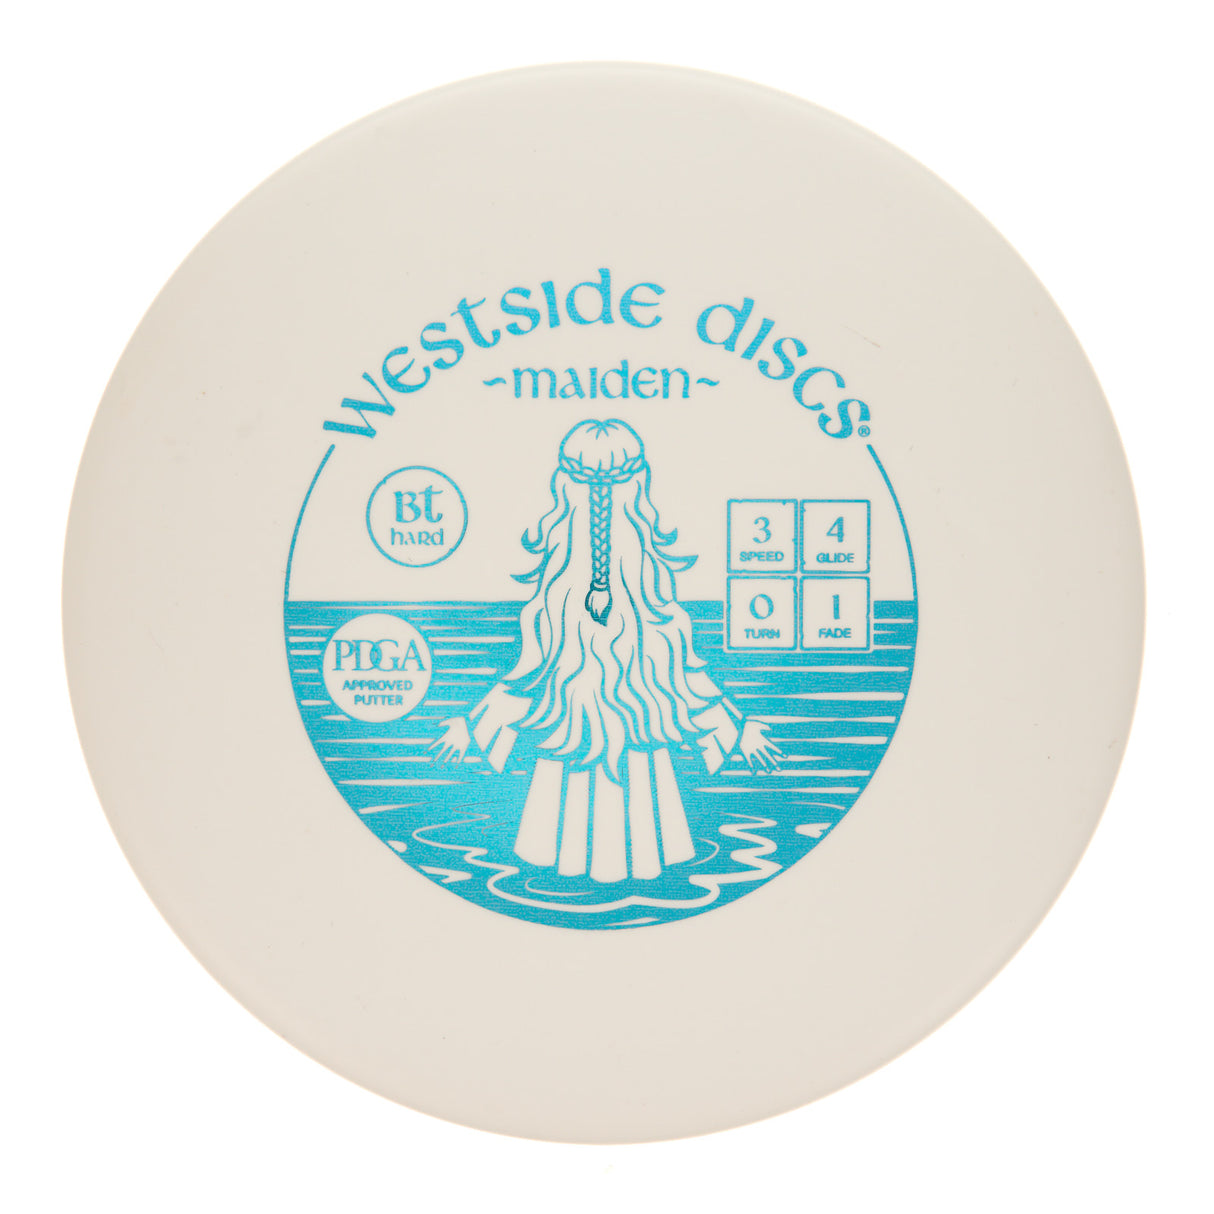 Westside Maiden - BT Hard 175g | Style 0001